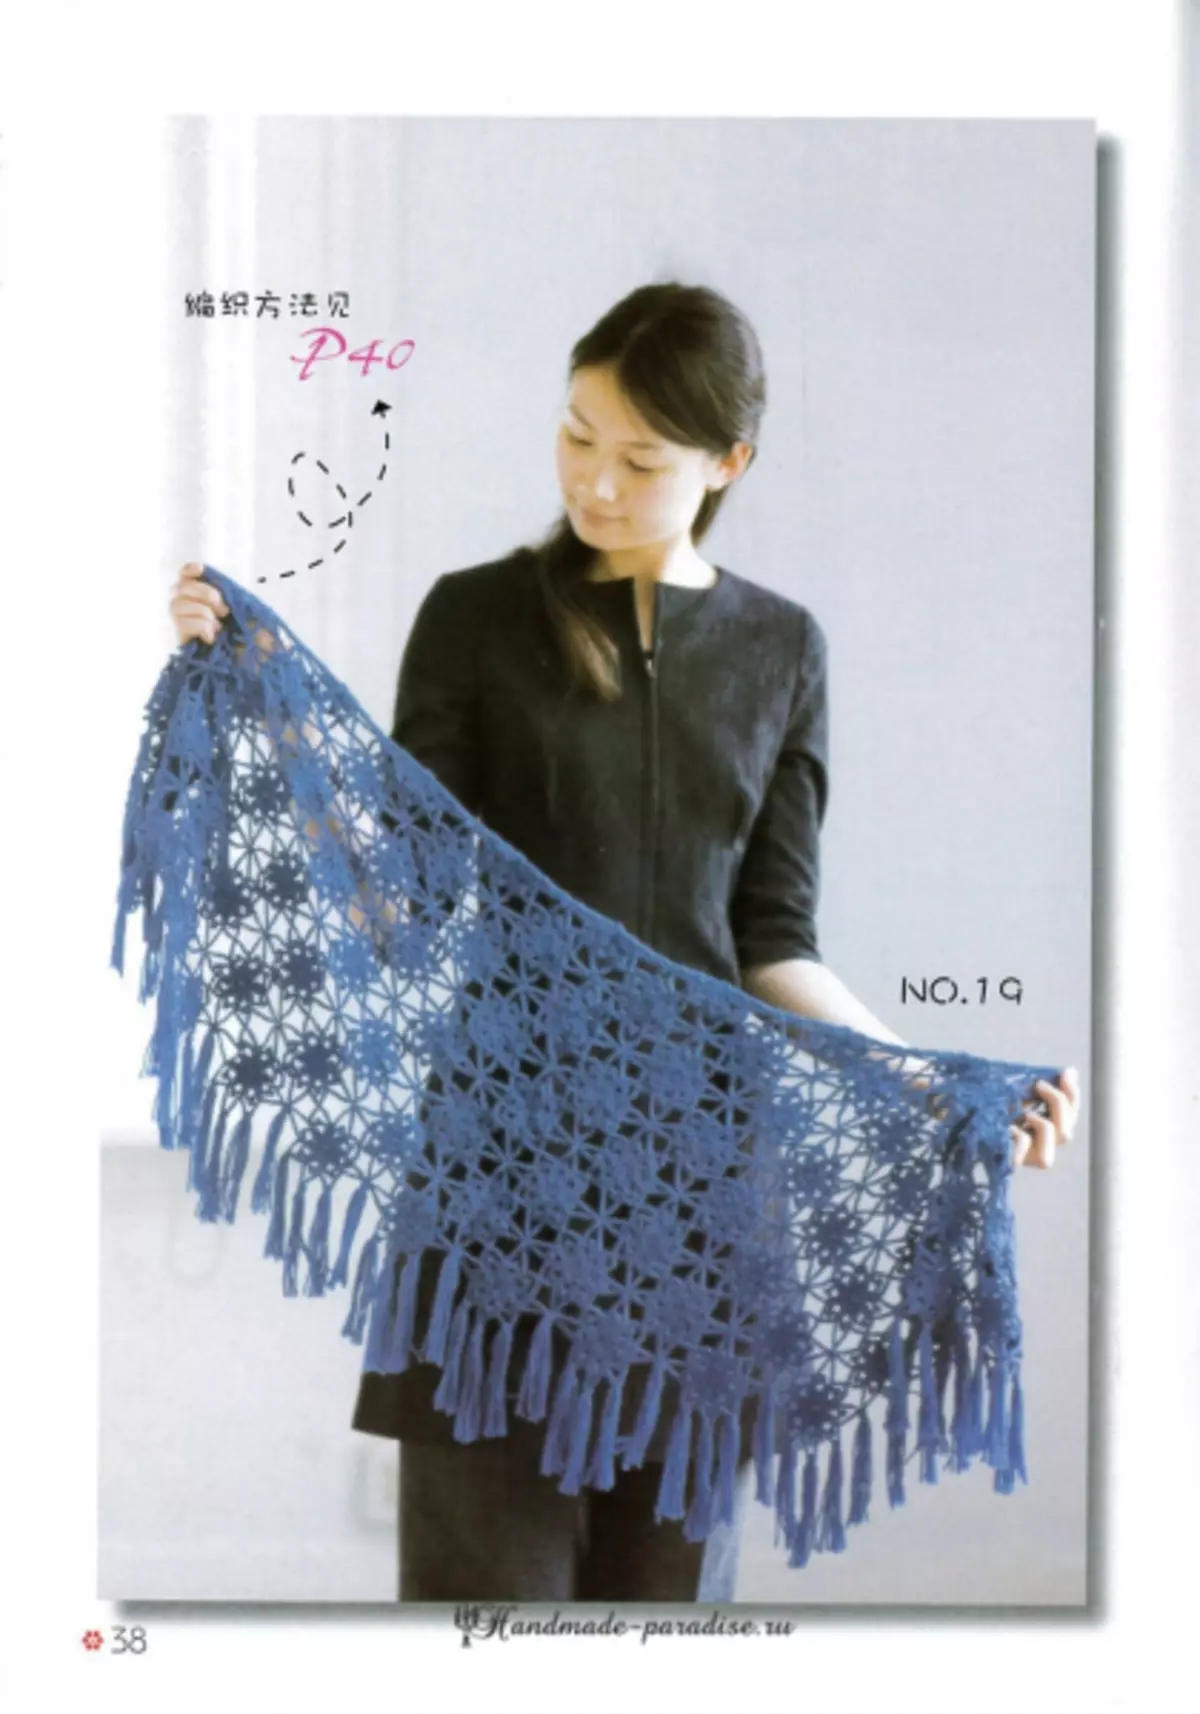 شاولتي، المعطف والرؤوس في مجلة يابانية مع مخططات